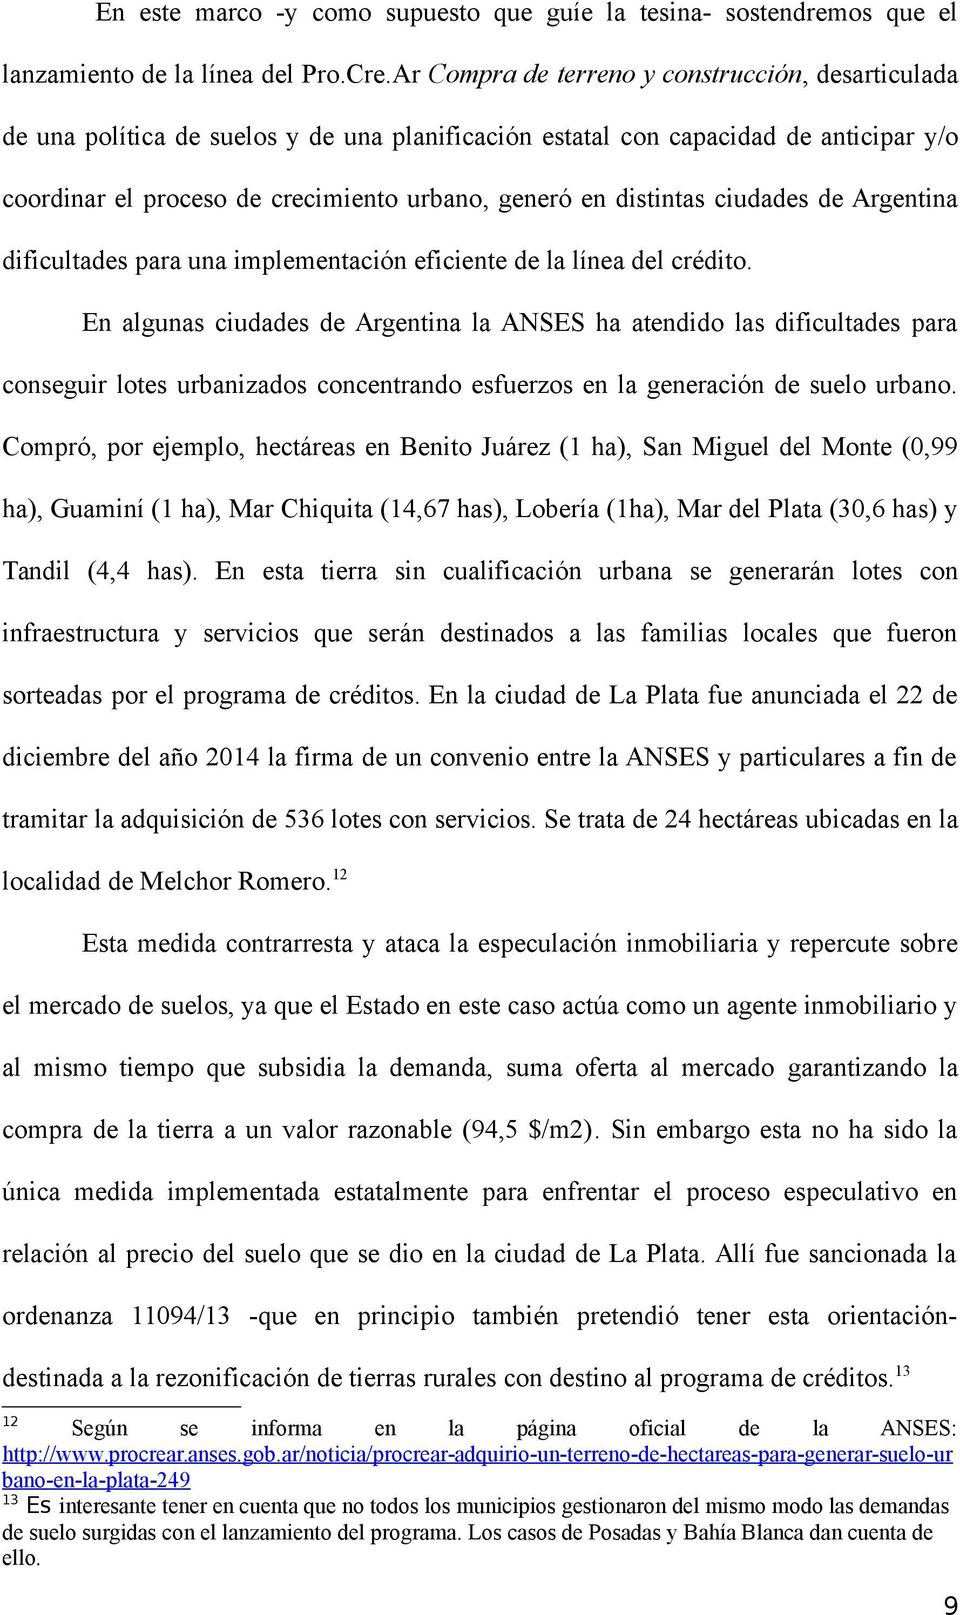 distintas ciudades de Argentina dificultades para una implementación eficiente de la línea del crédito.